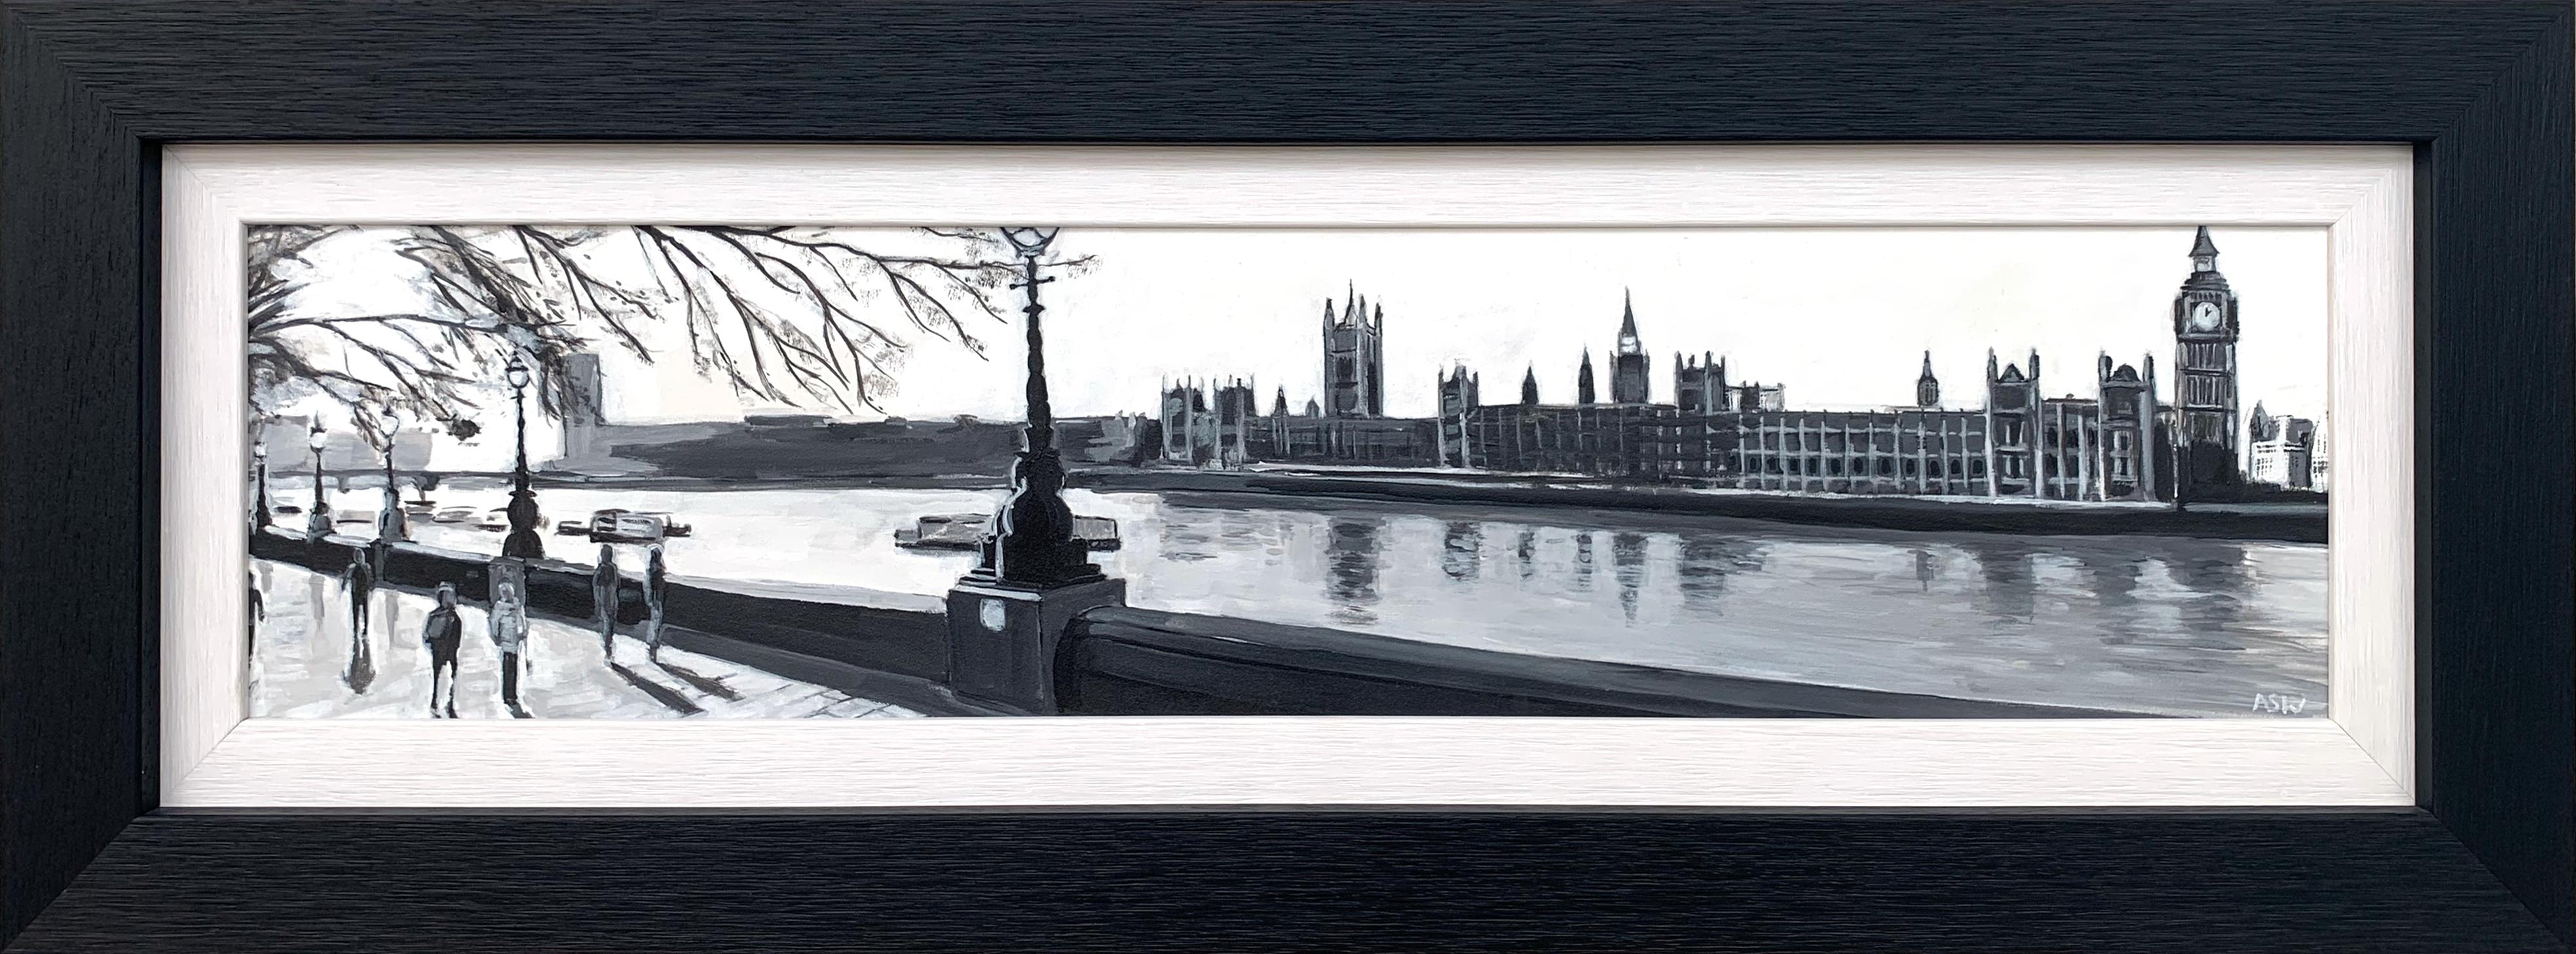 Peinture panoramique en noir et blanc de Westminster Victoria Embankment London City